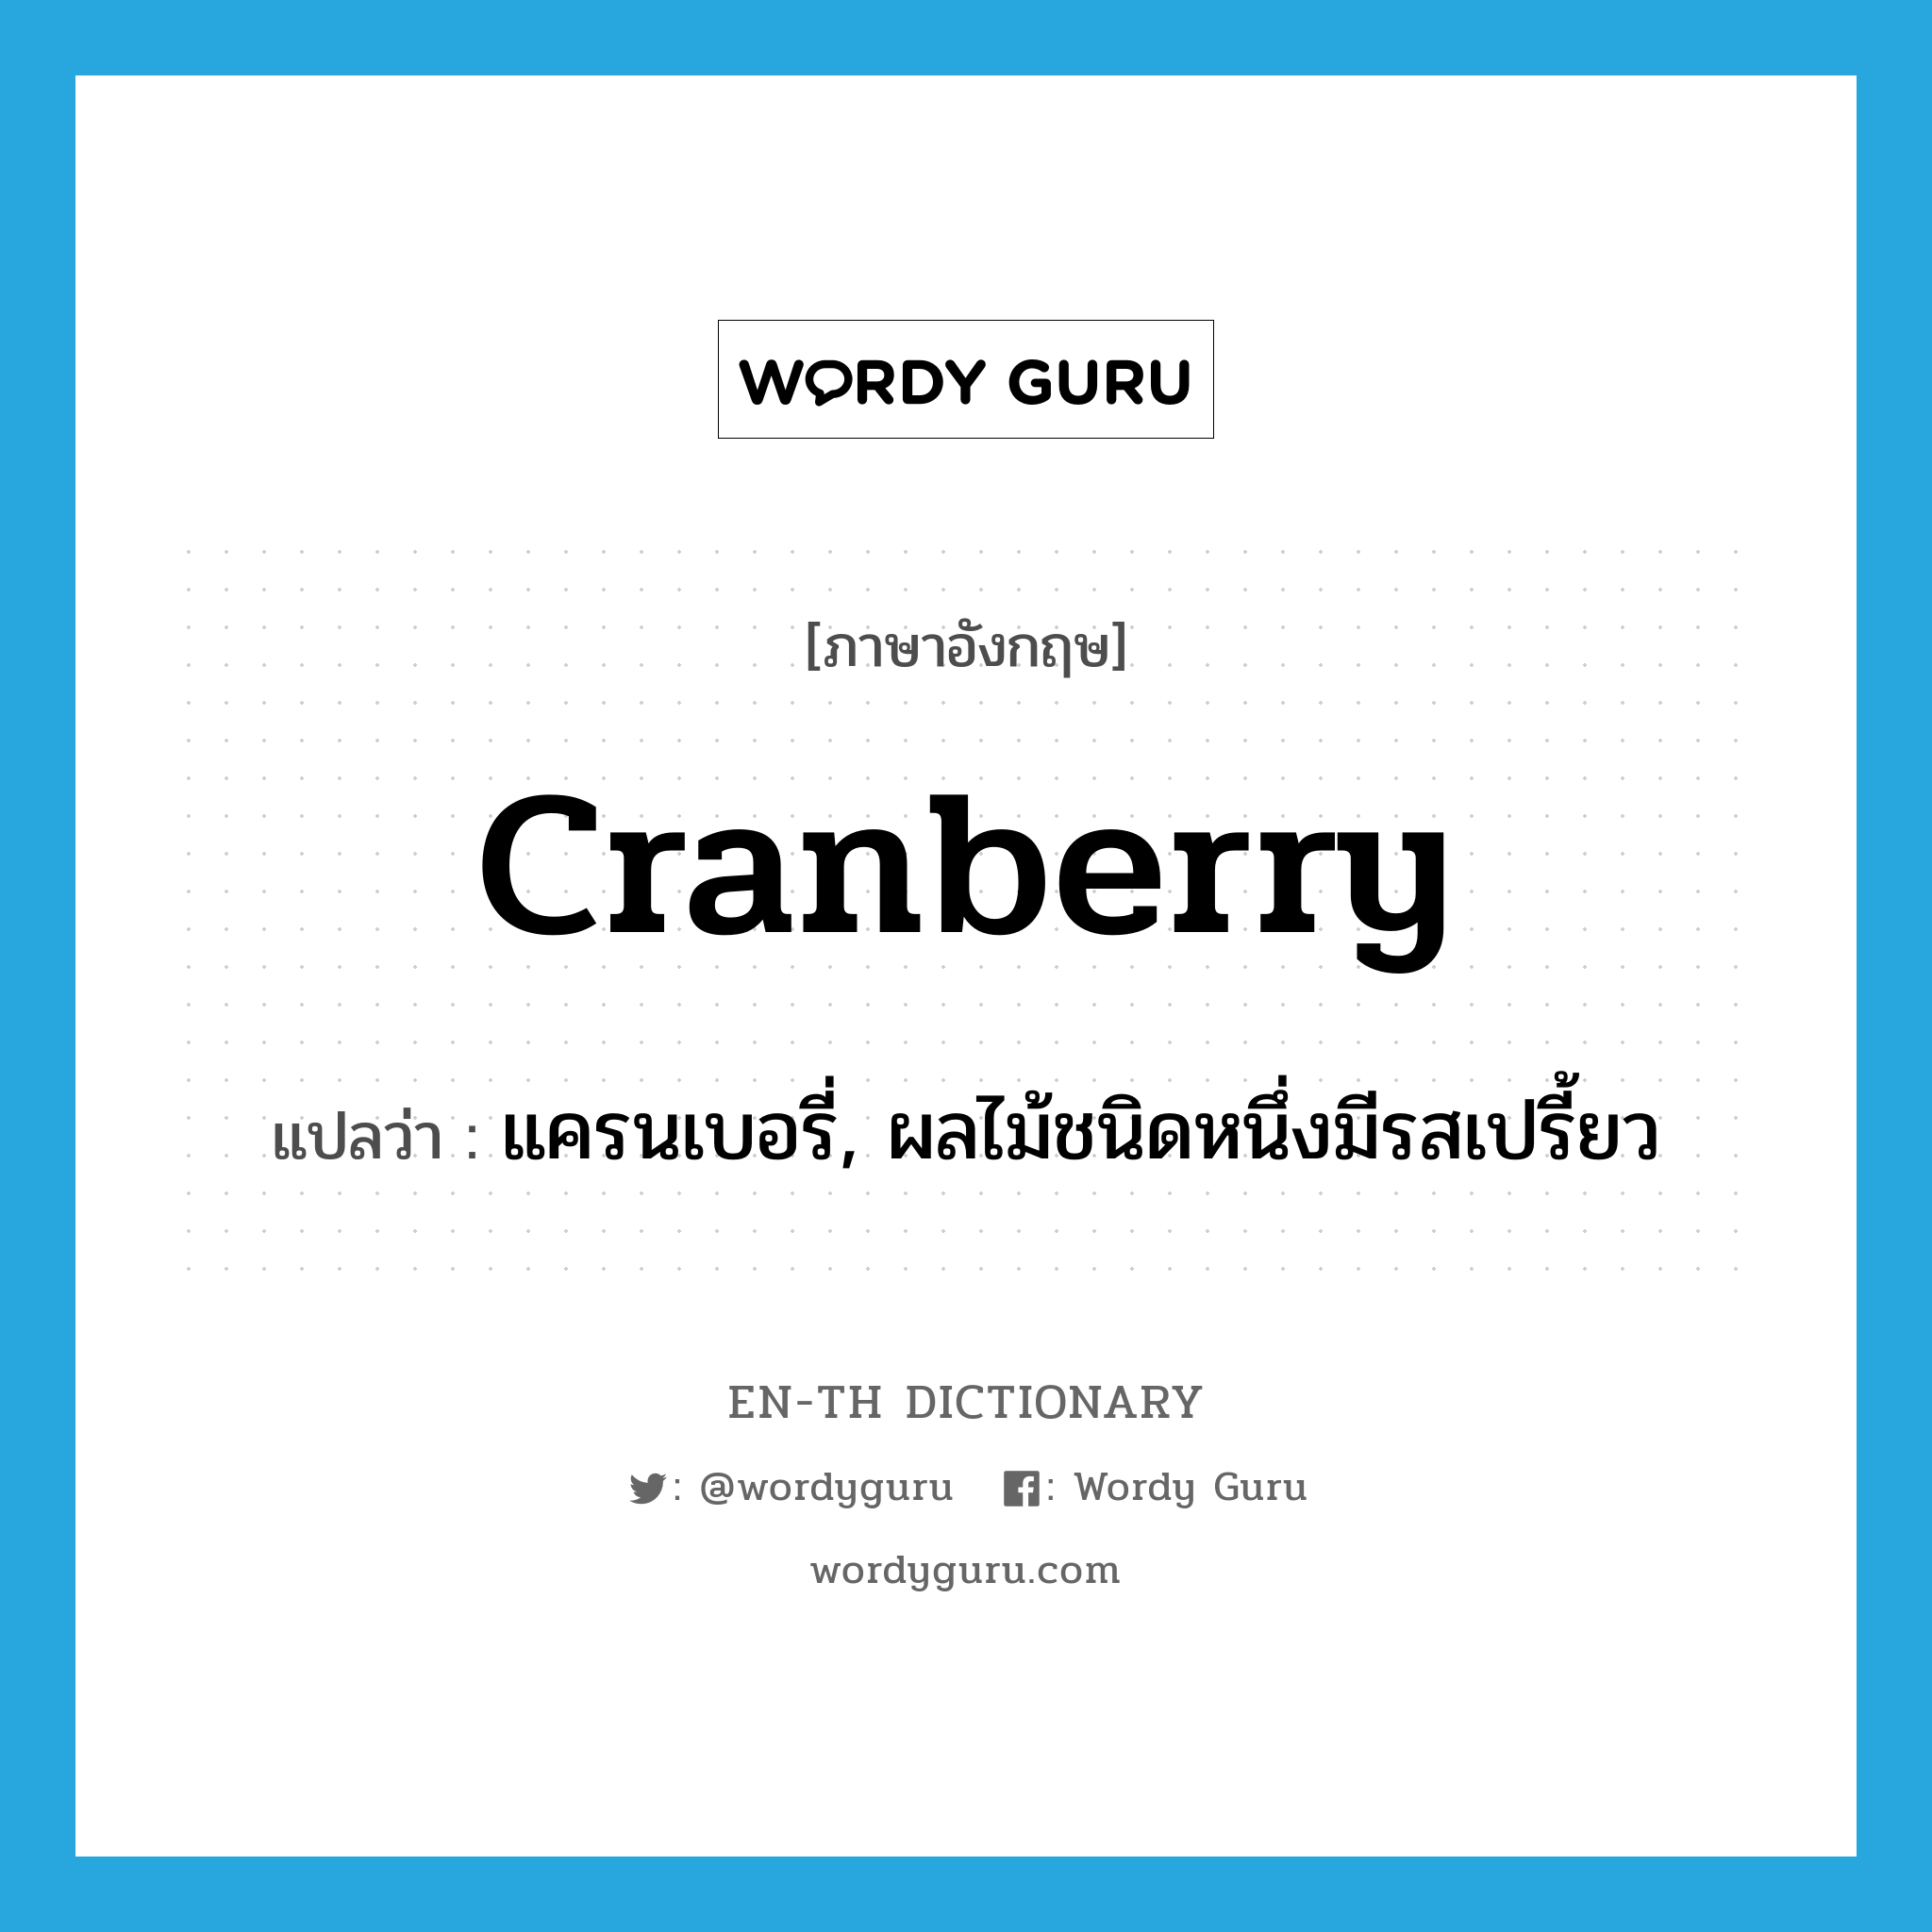 แครนเบอรี่, ผลไม้ชนิดหนึ่งมีรสเปรี้ยว ภาษาอังกฤษ?, คำศัพท์ภาษาอังกฤษ แครนเบอรี่, ผลไม้ชนิดหนึ่งมีรสเปรี้ยว แปลว่า cranberry ประเภท N หมวด N